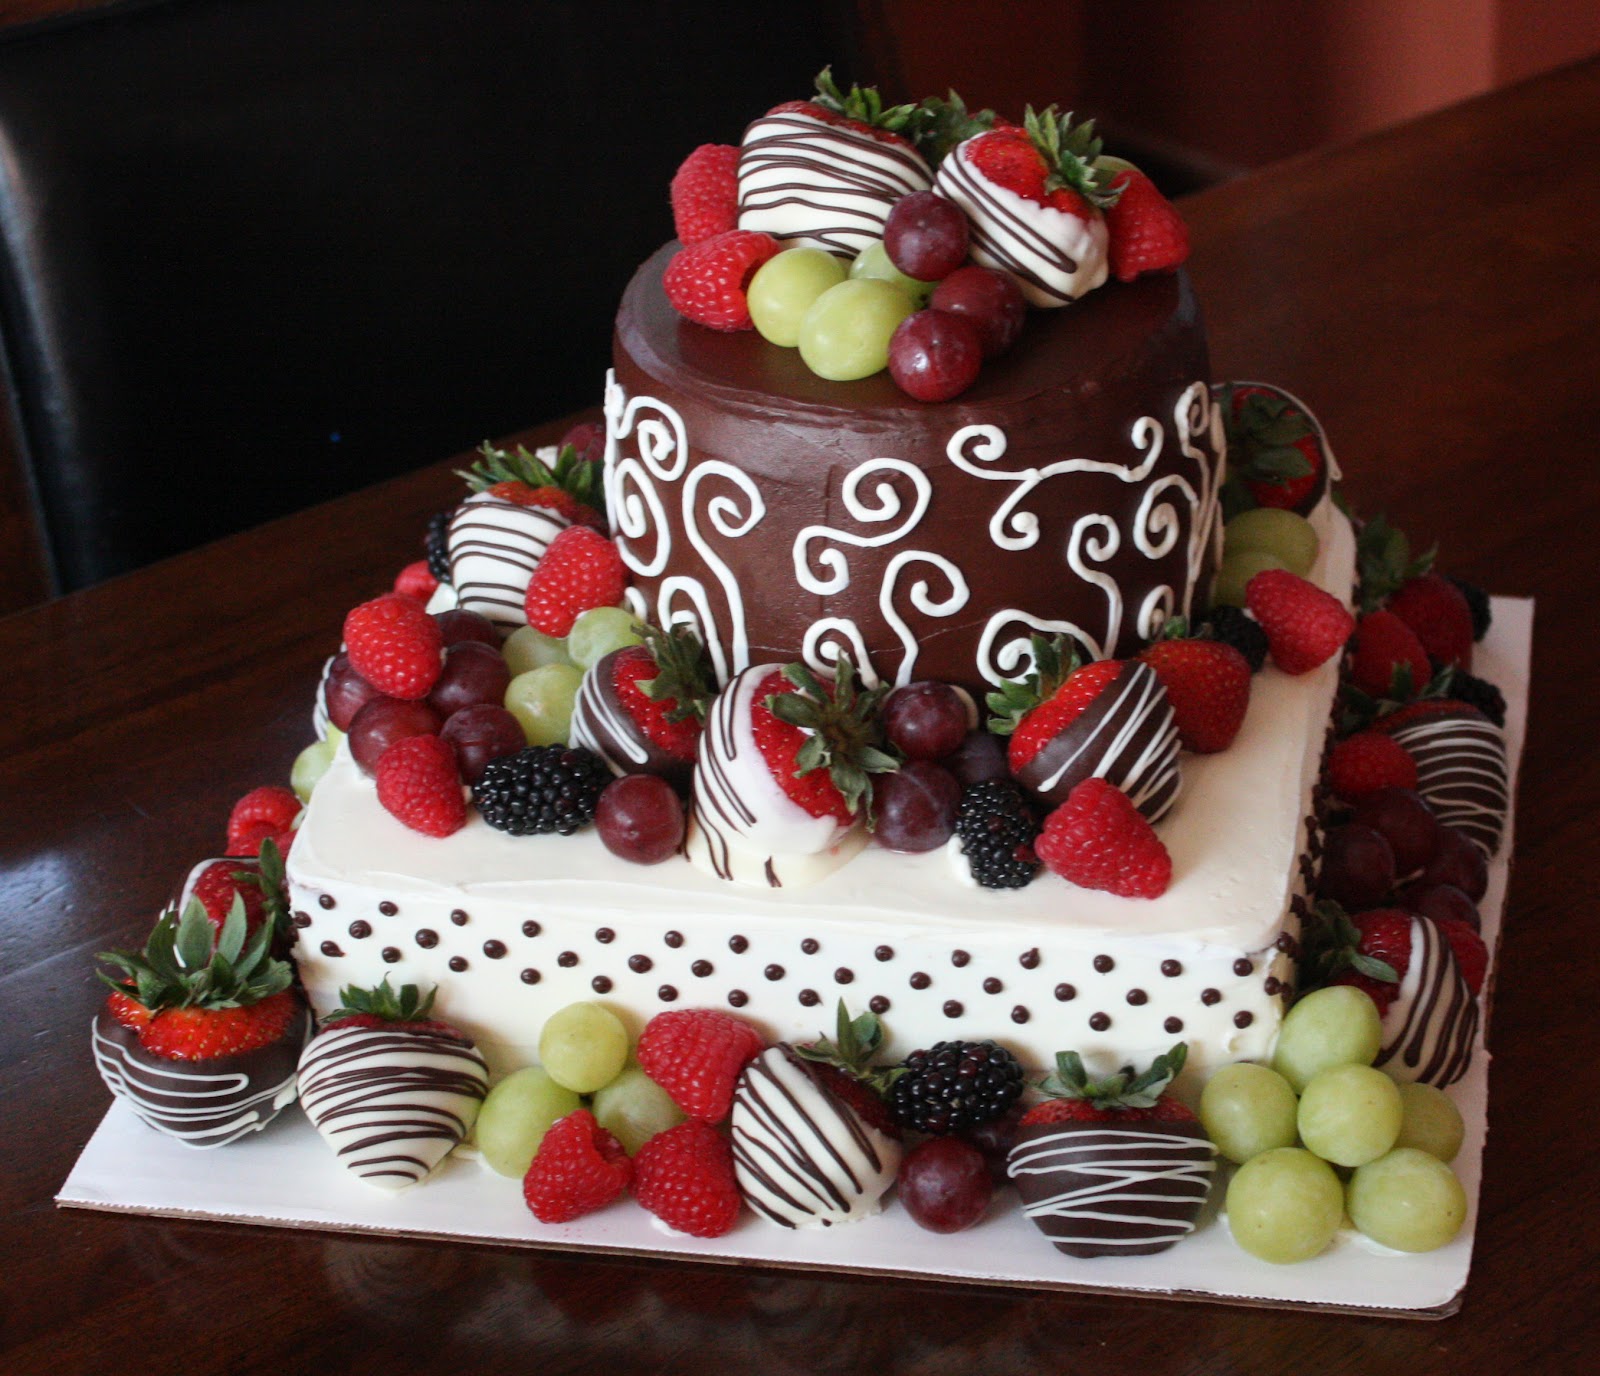 Chocolate Birthday Cake with Strawberries